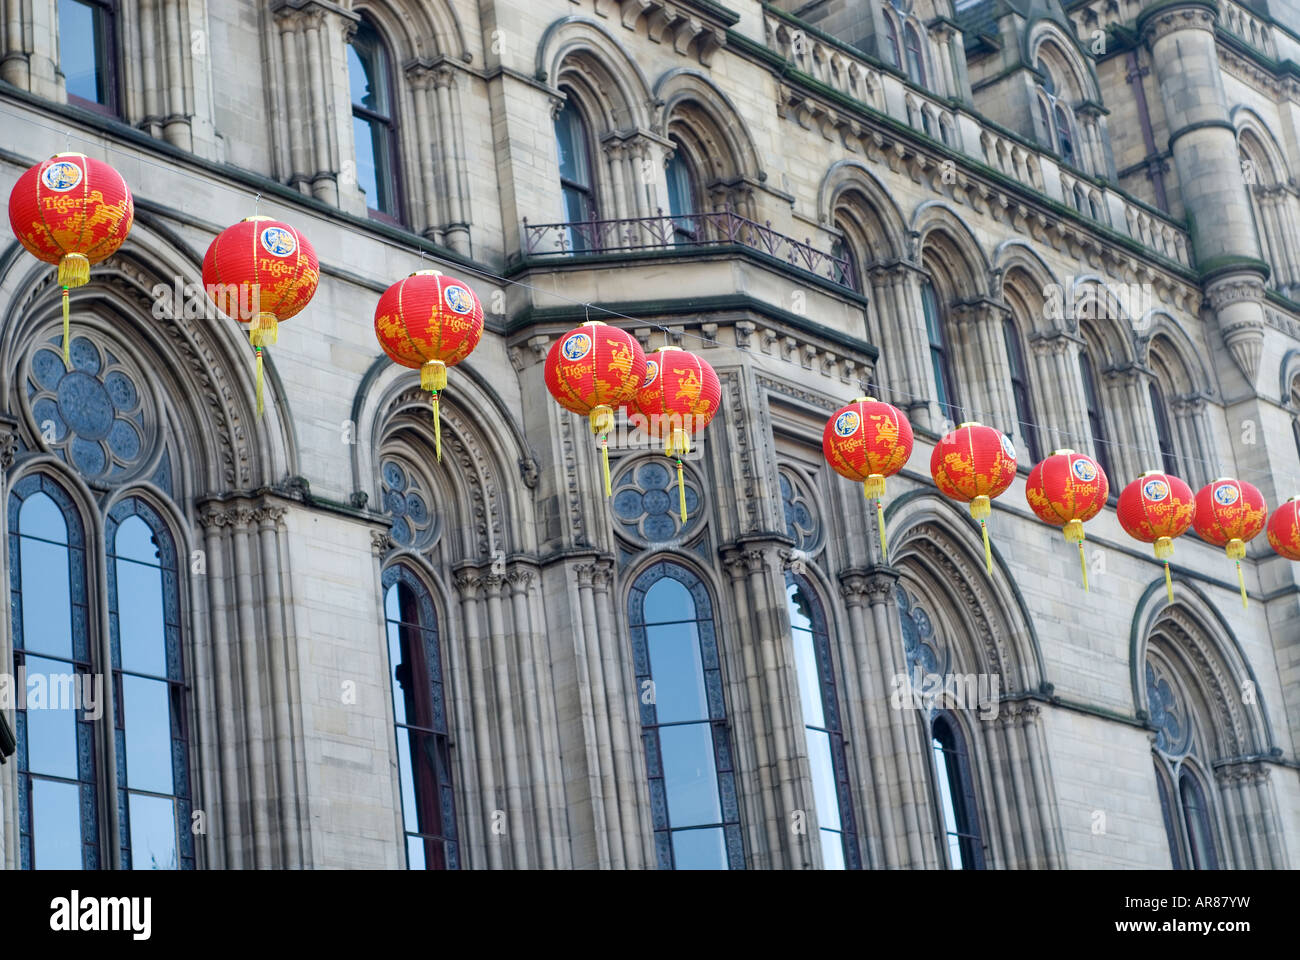 Linternas chinas decoración externa del Ayuntamiento de Manchester UK Foto de stock